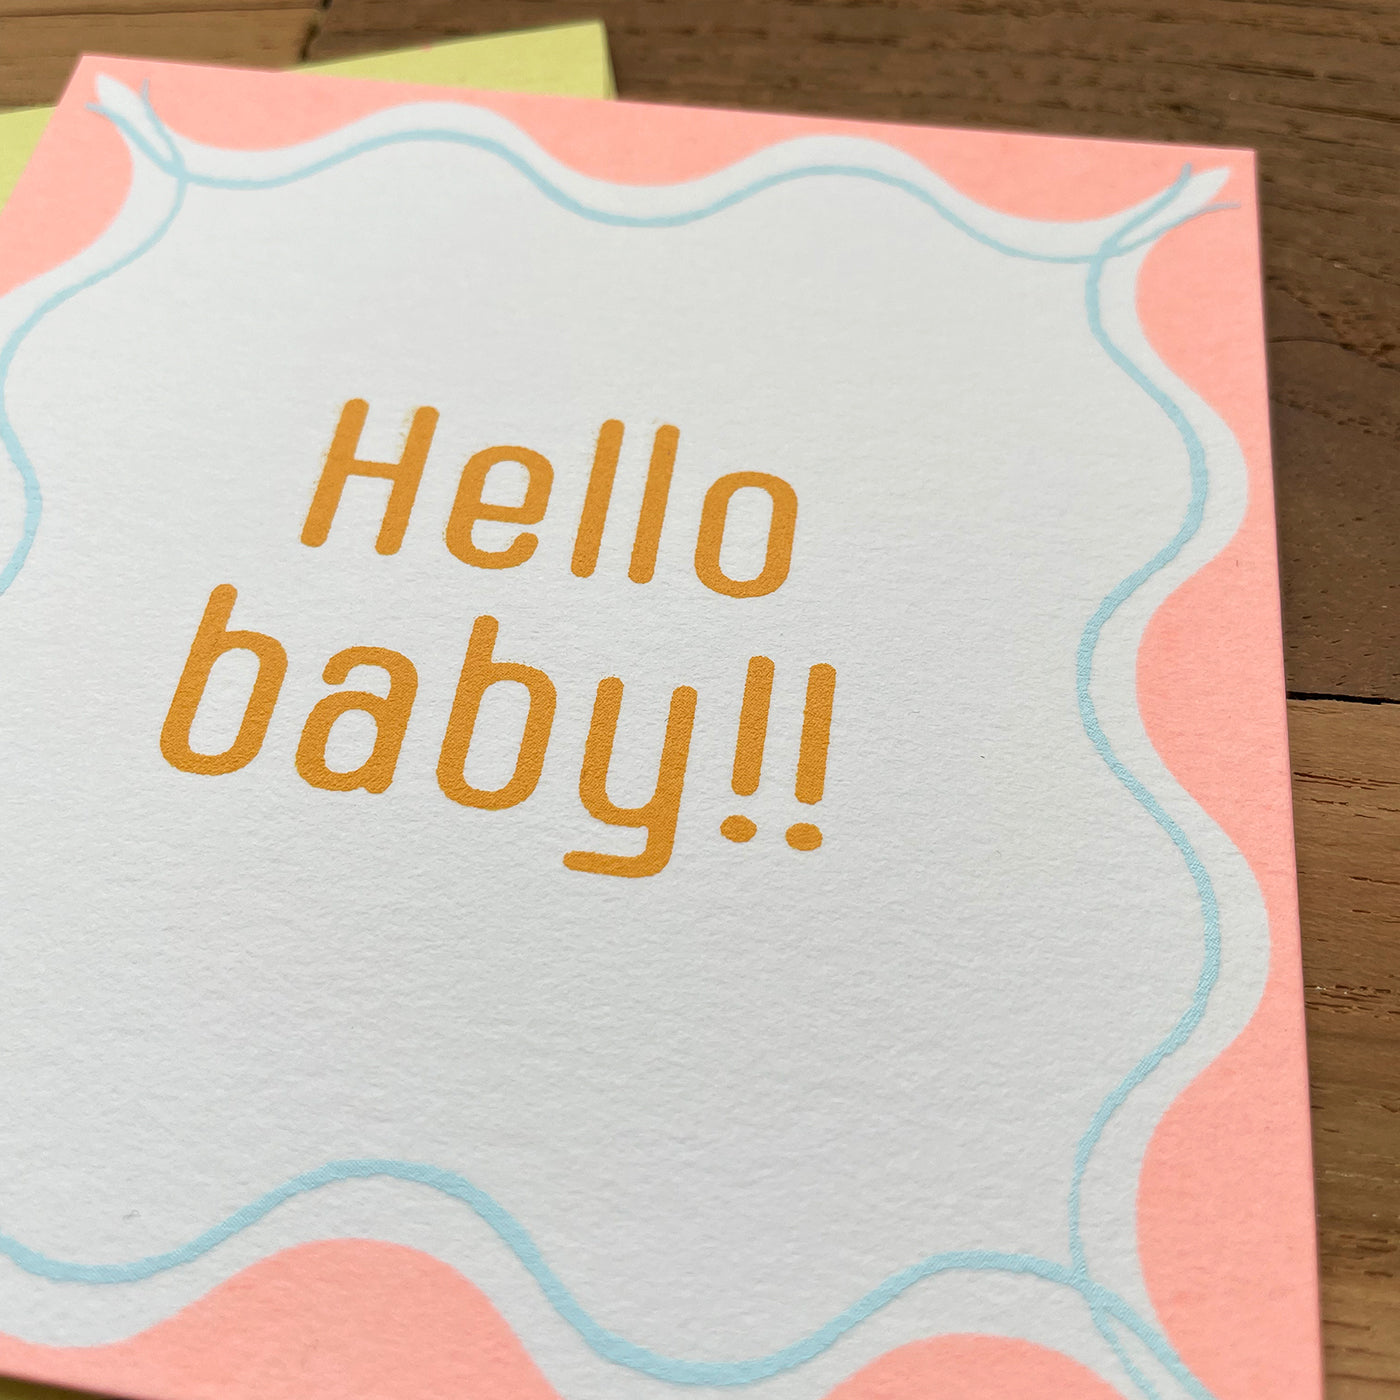 なみなみ正方形カード-baby/ square greeting card "Hello baby!!"